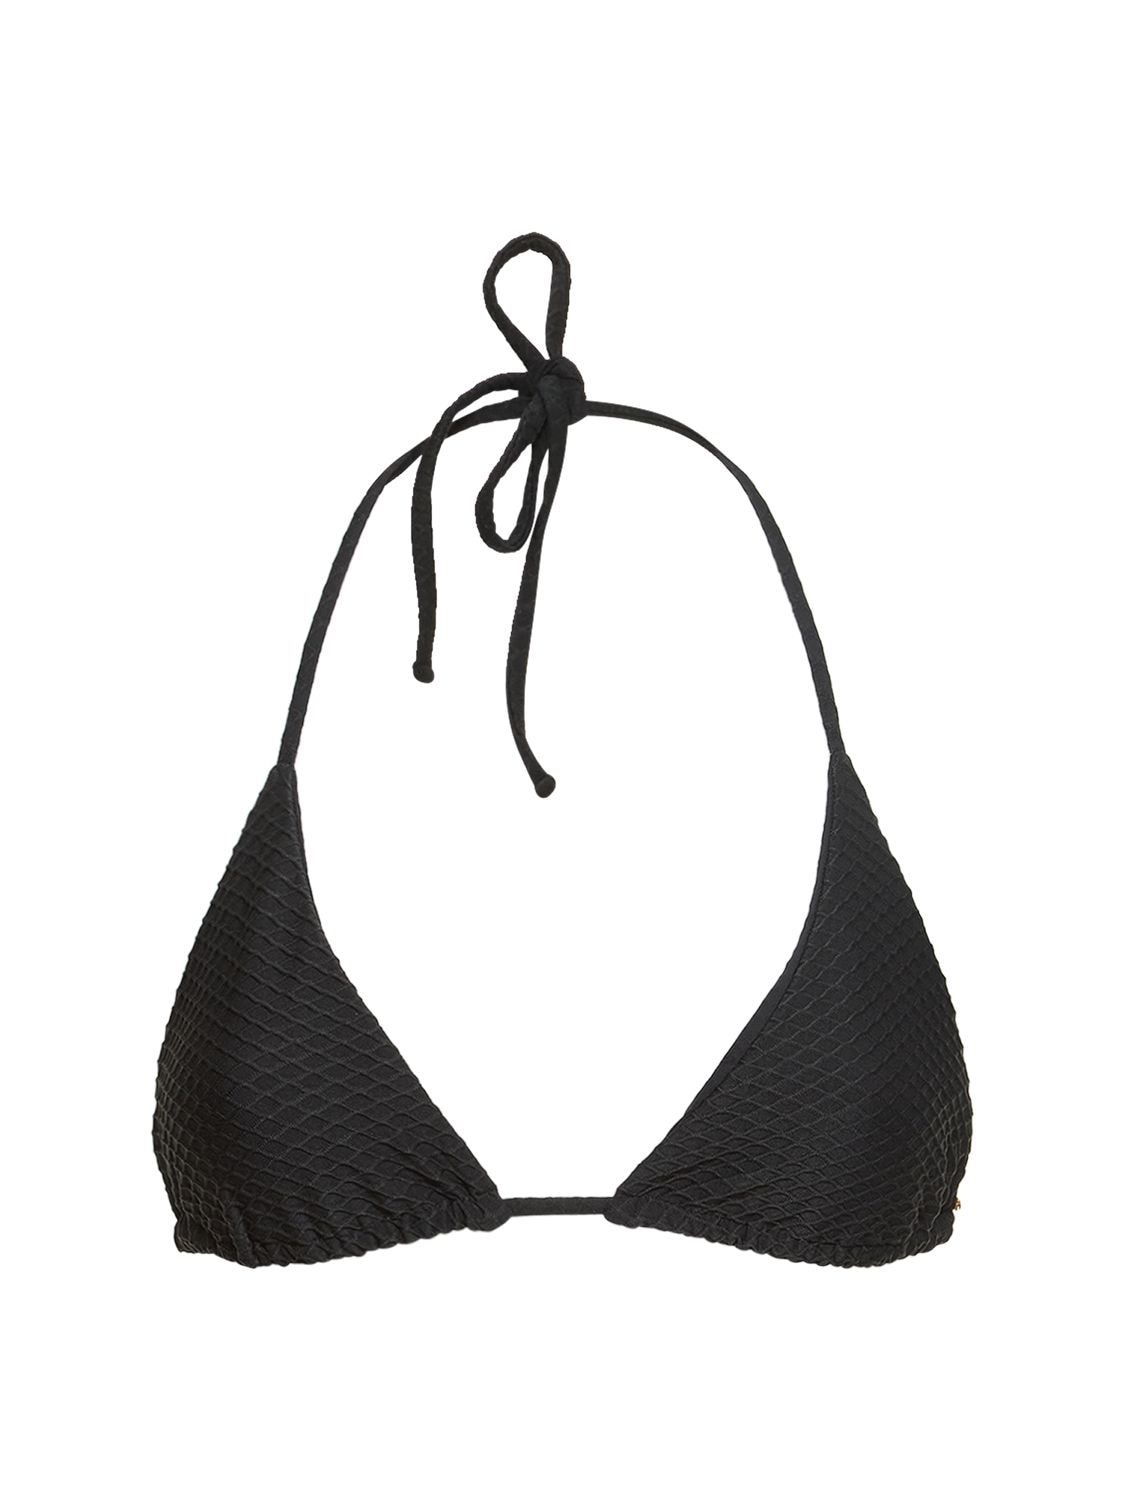 Amara Nylon Triangle Bikini Top